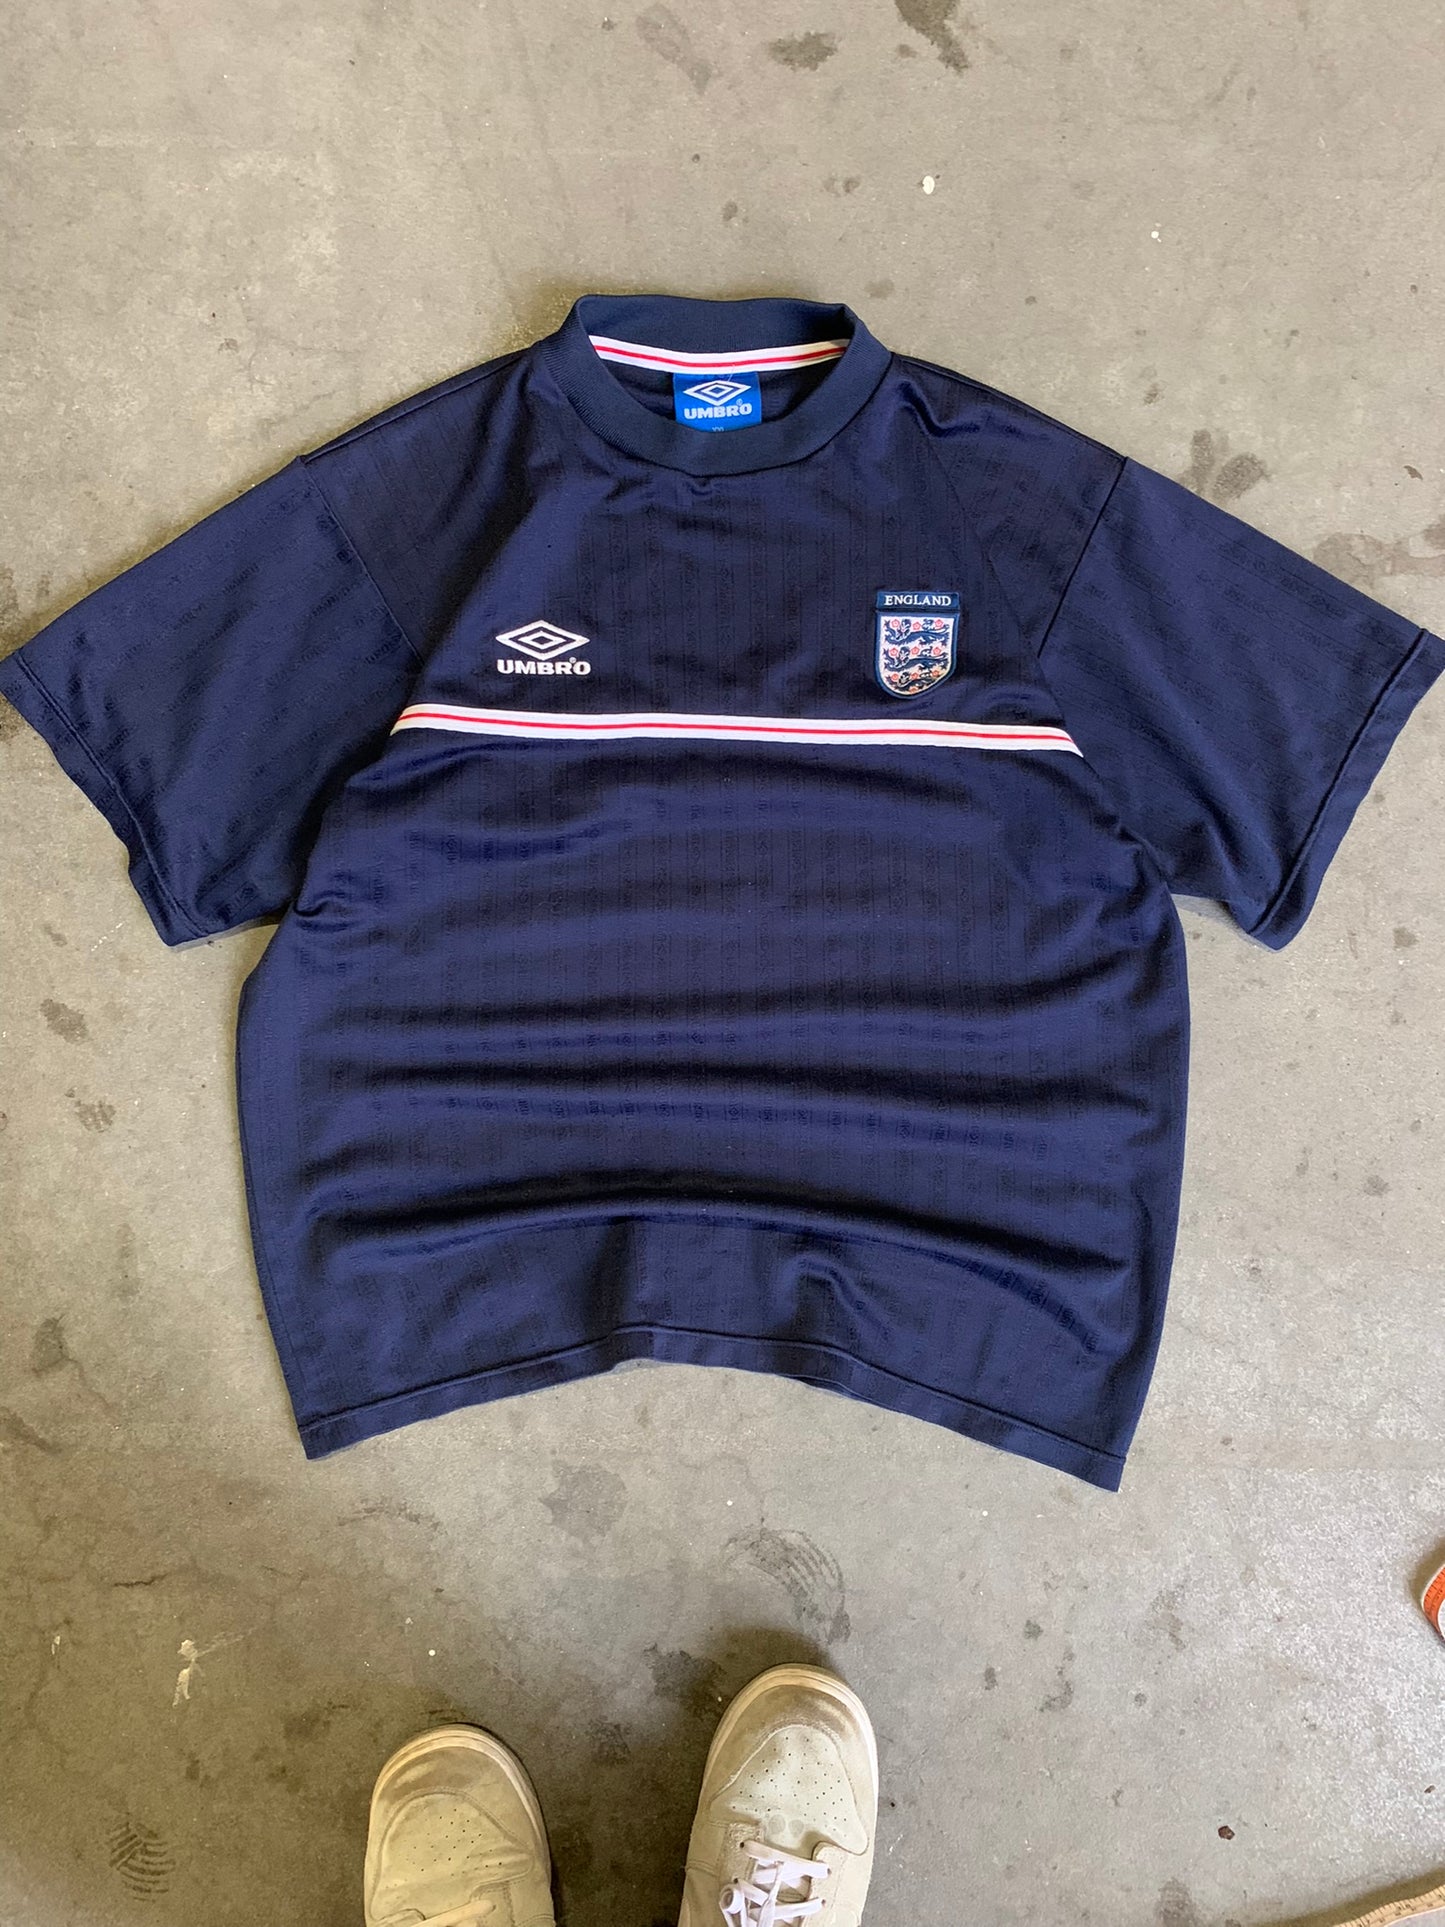 (XL/2X) Umbro England Kit